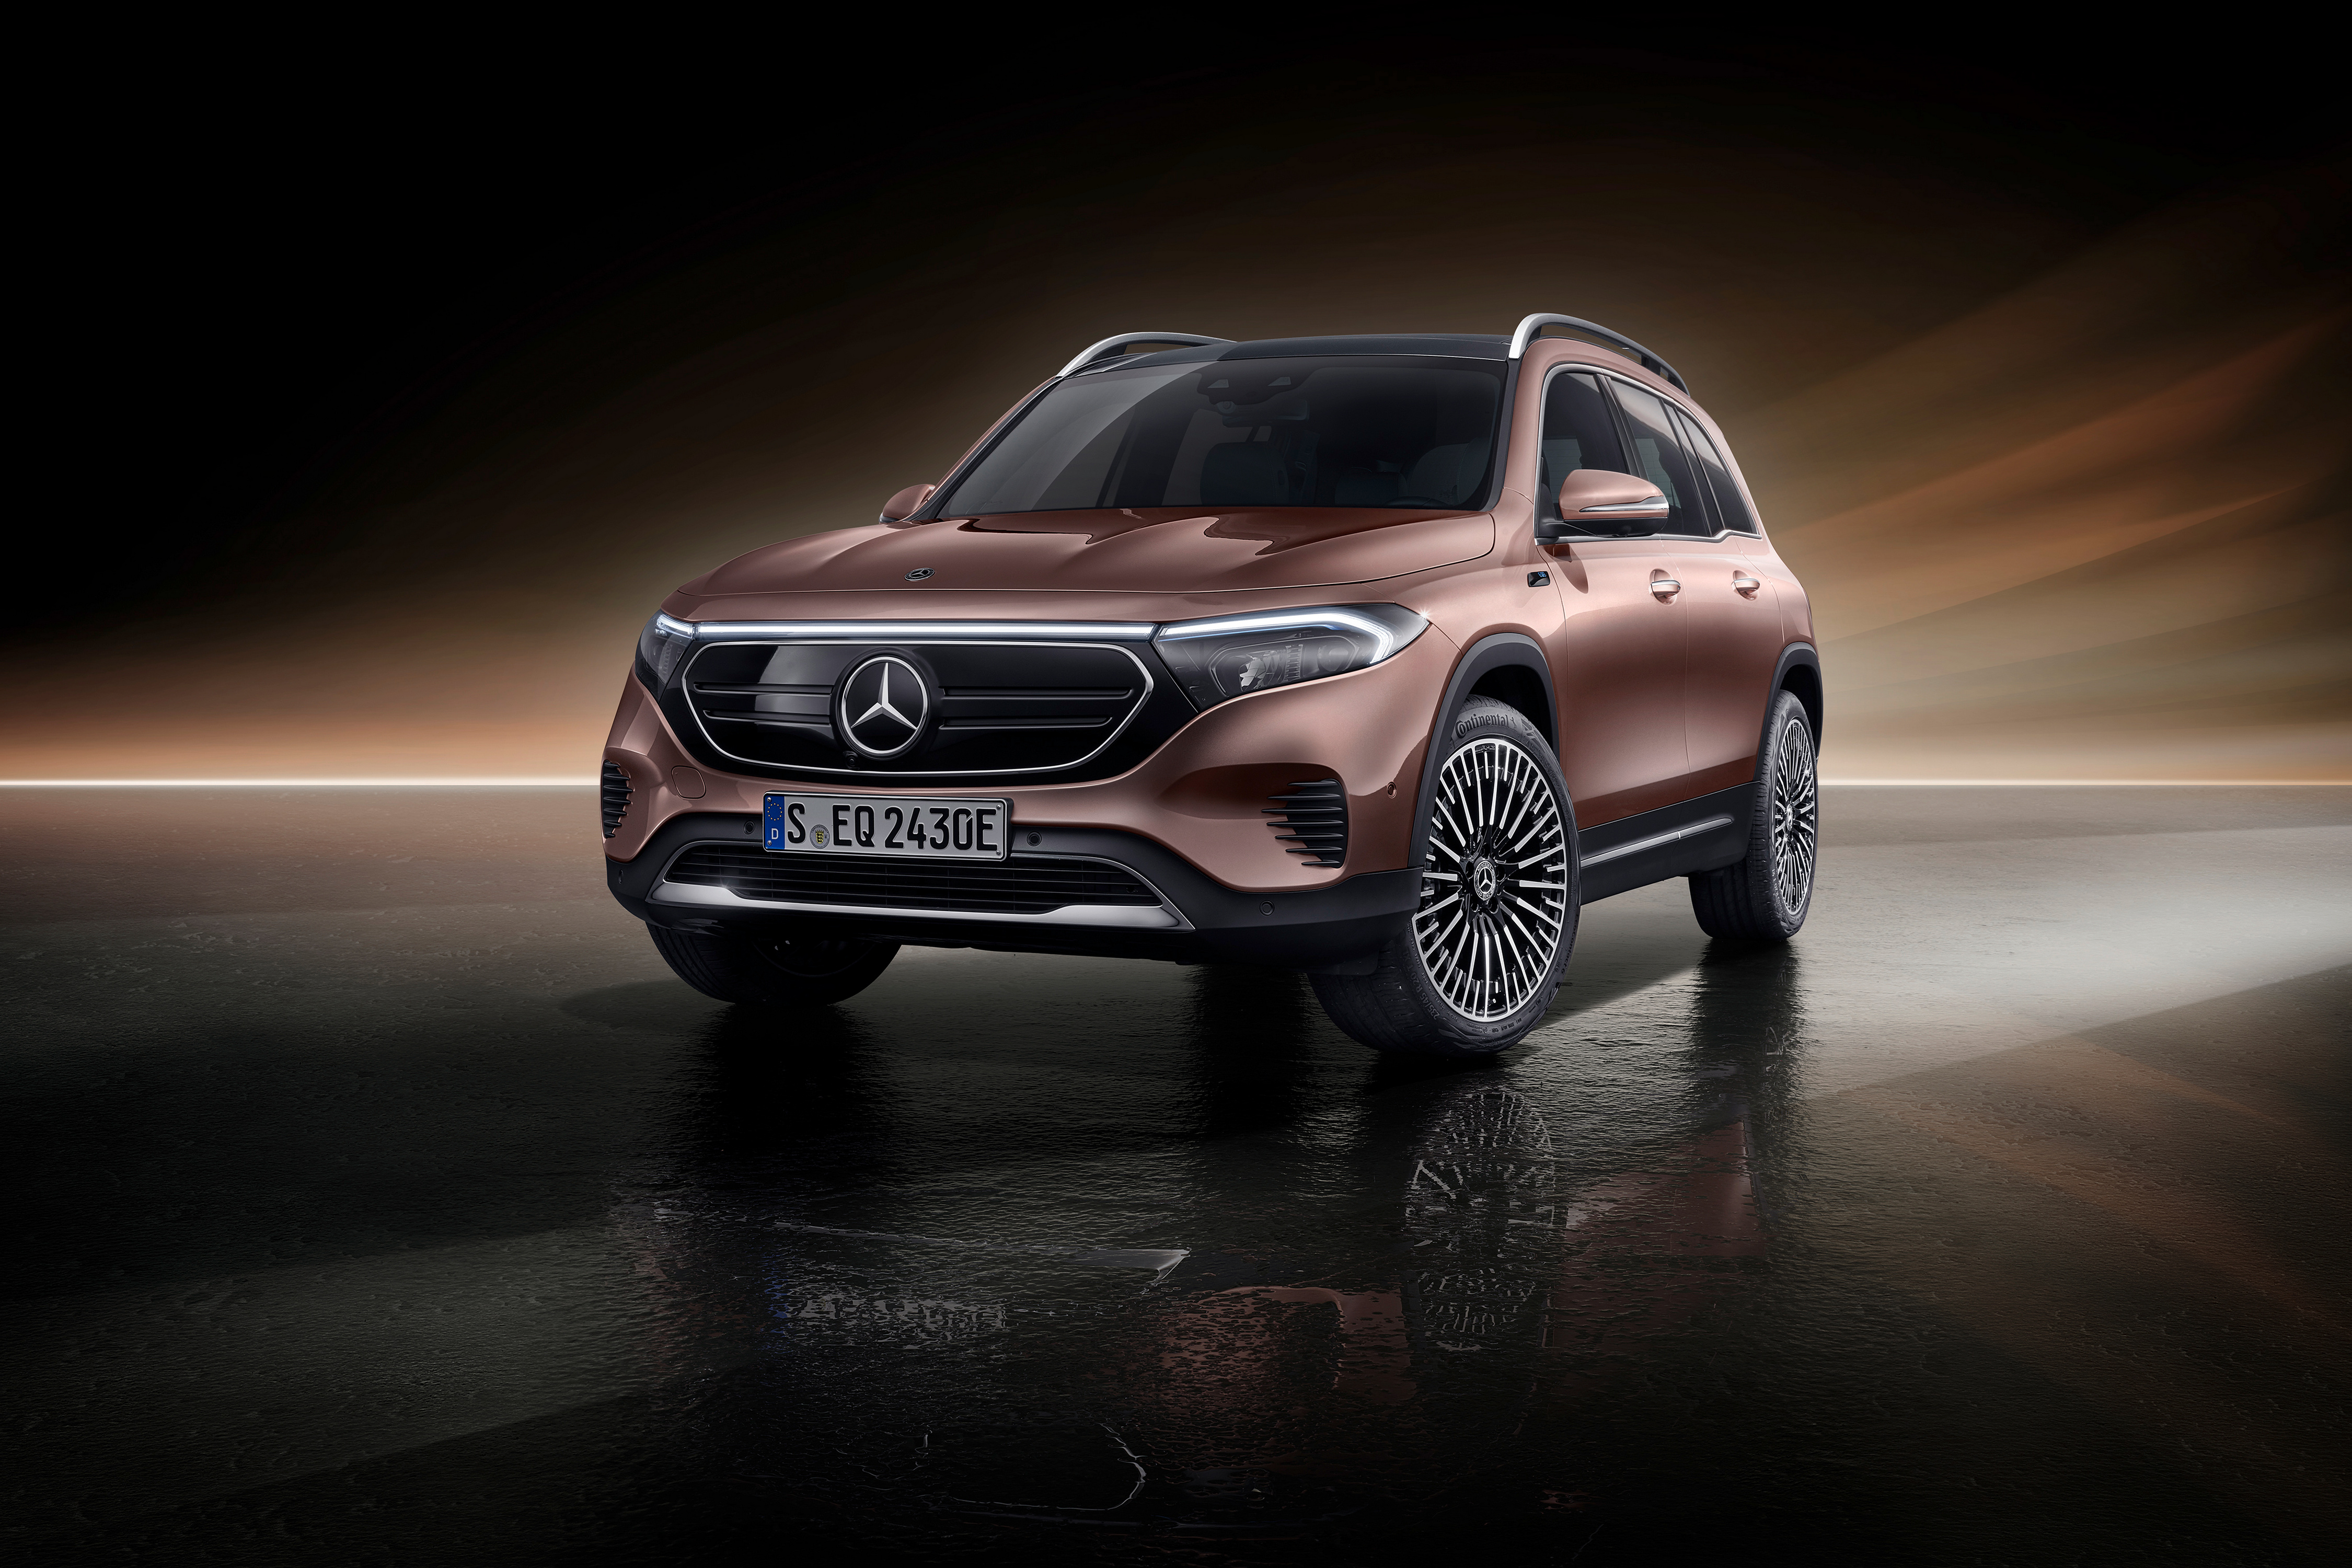 Mercedes eqc HD wallpapers | Pxfuel